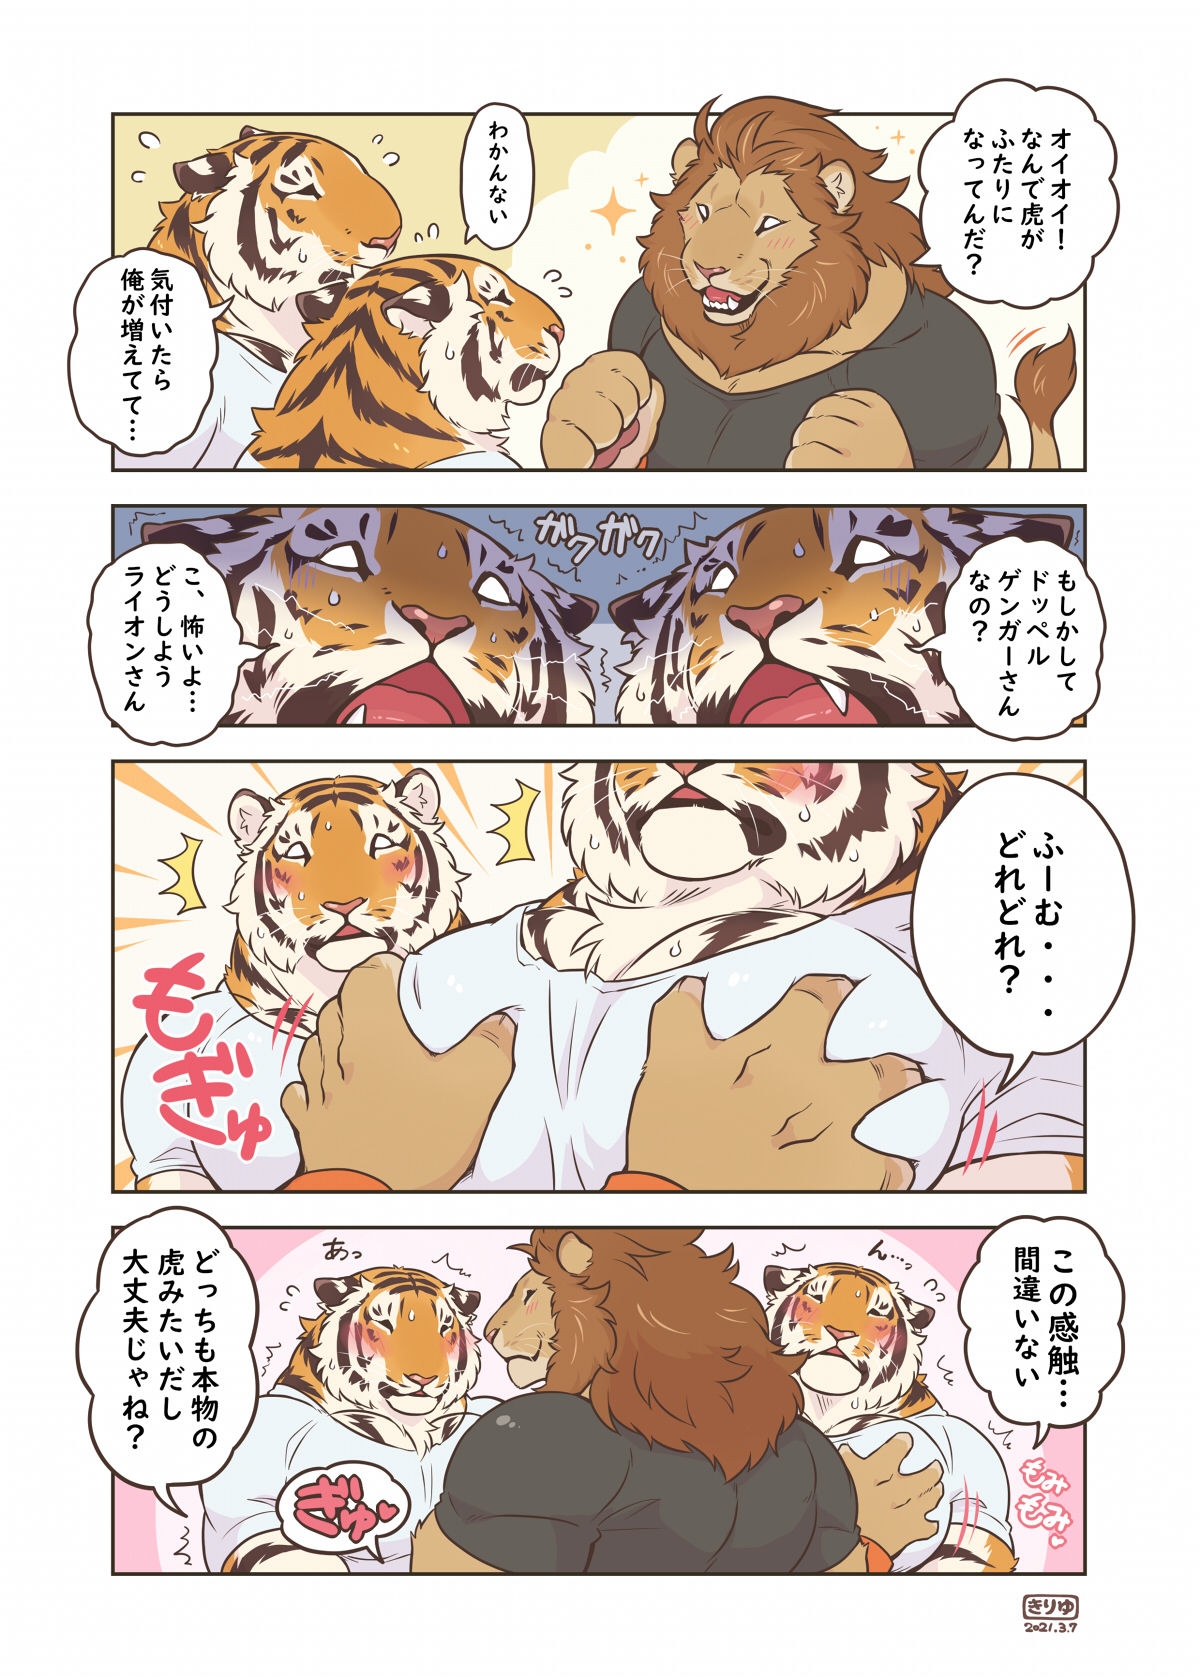 [Kiriyu-o0v0o [Tfws (Kirin)] (giraffe914)] Lyan-san and Toratake-chan 59